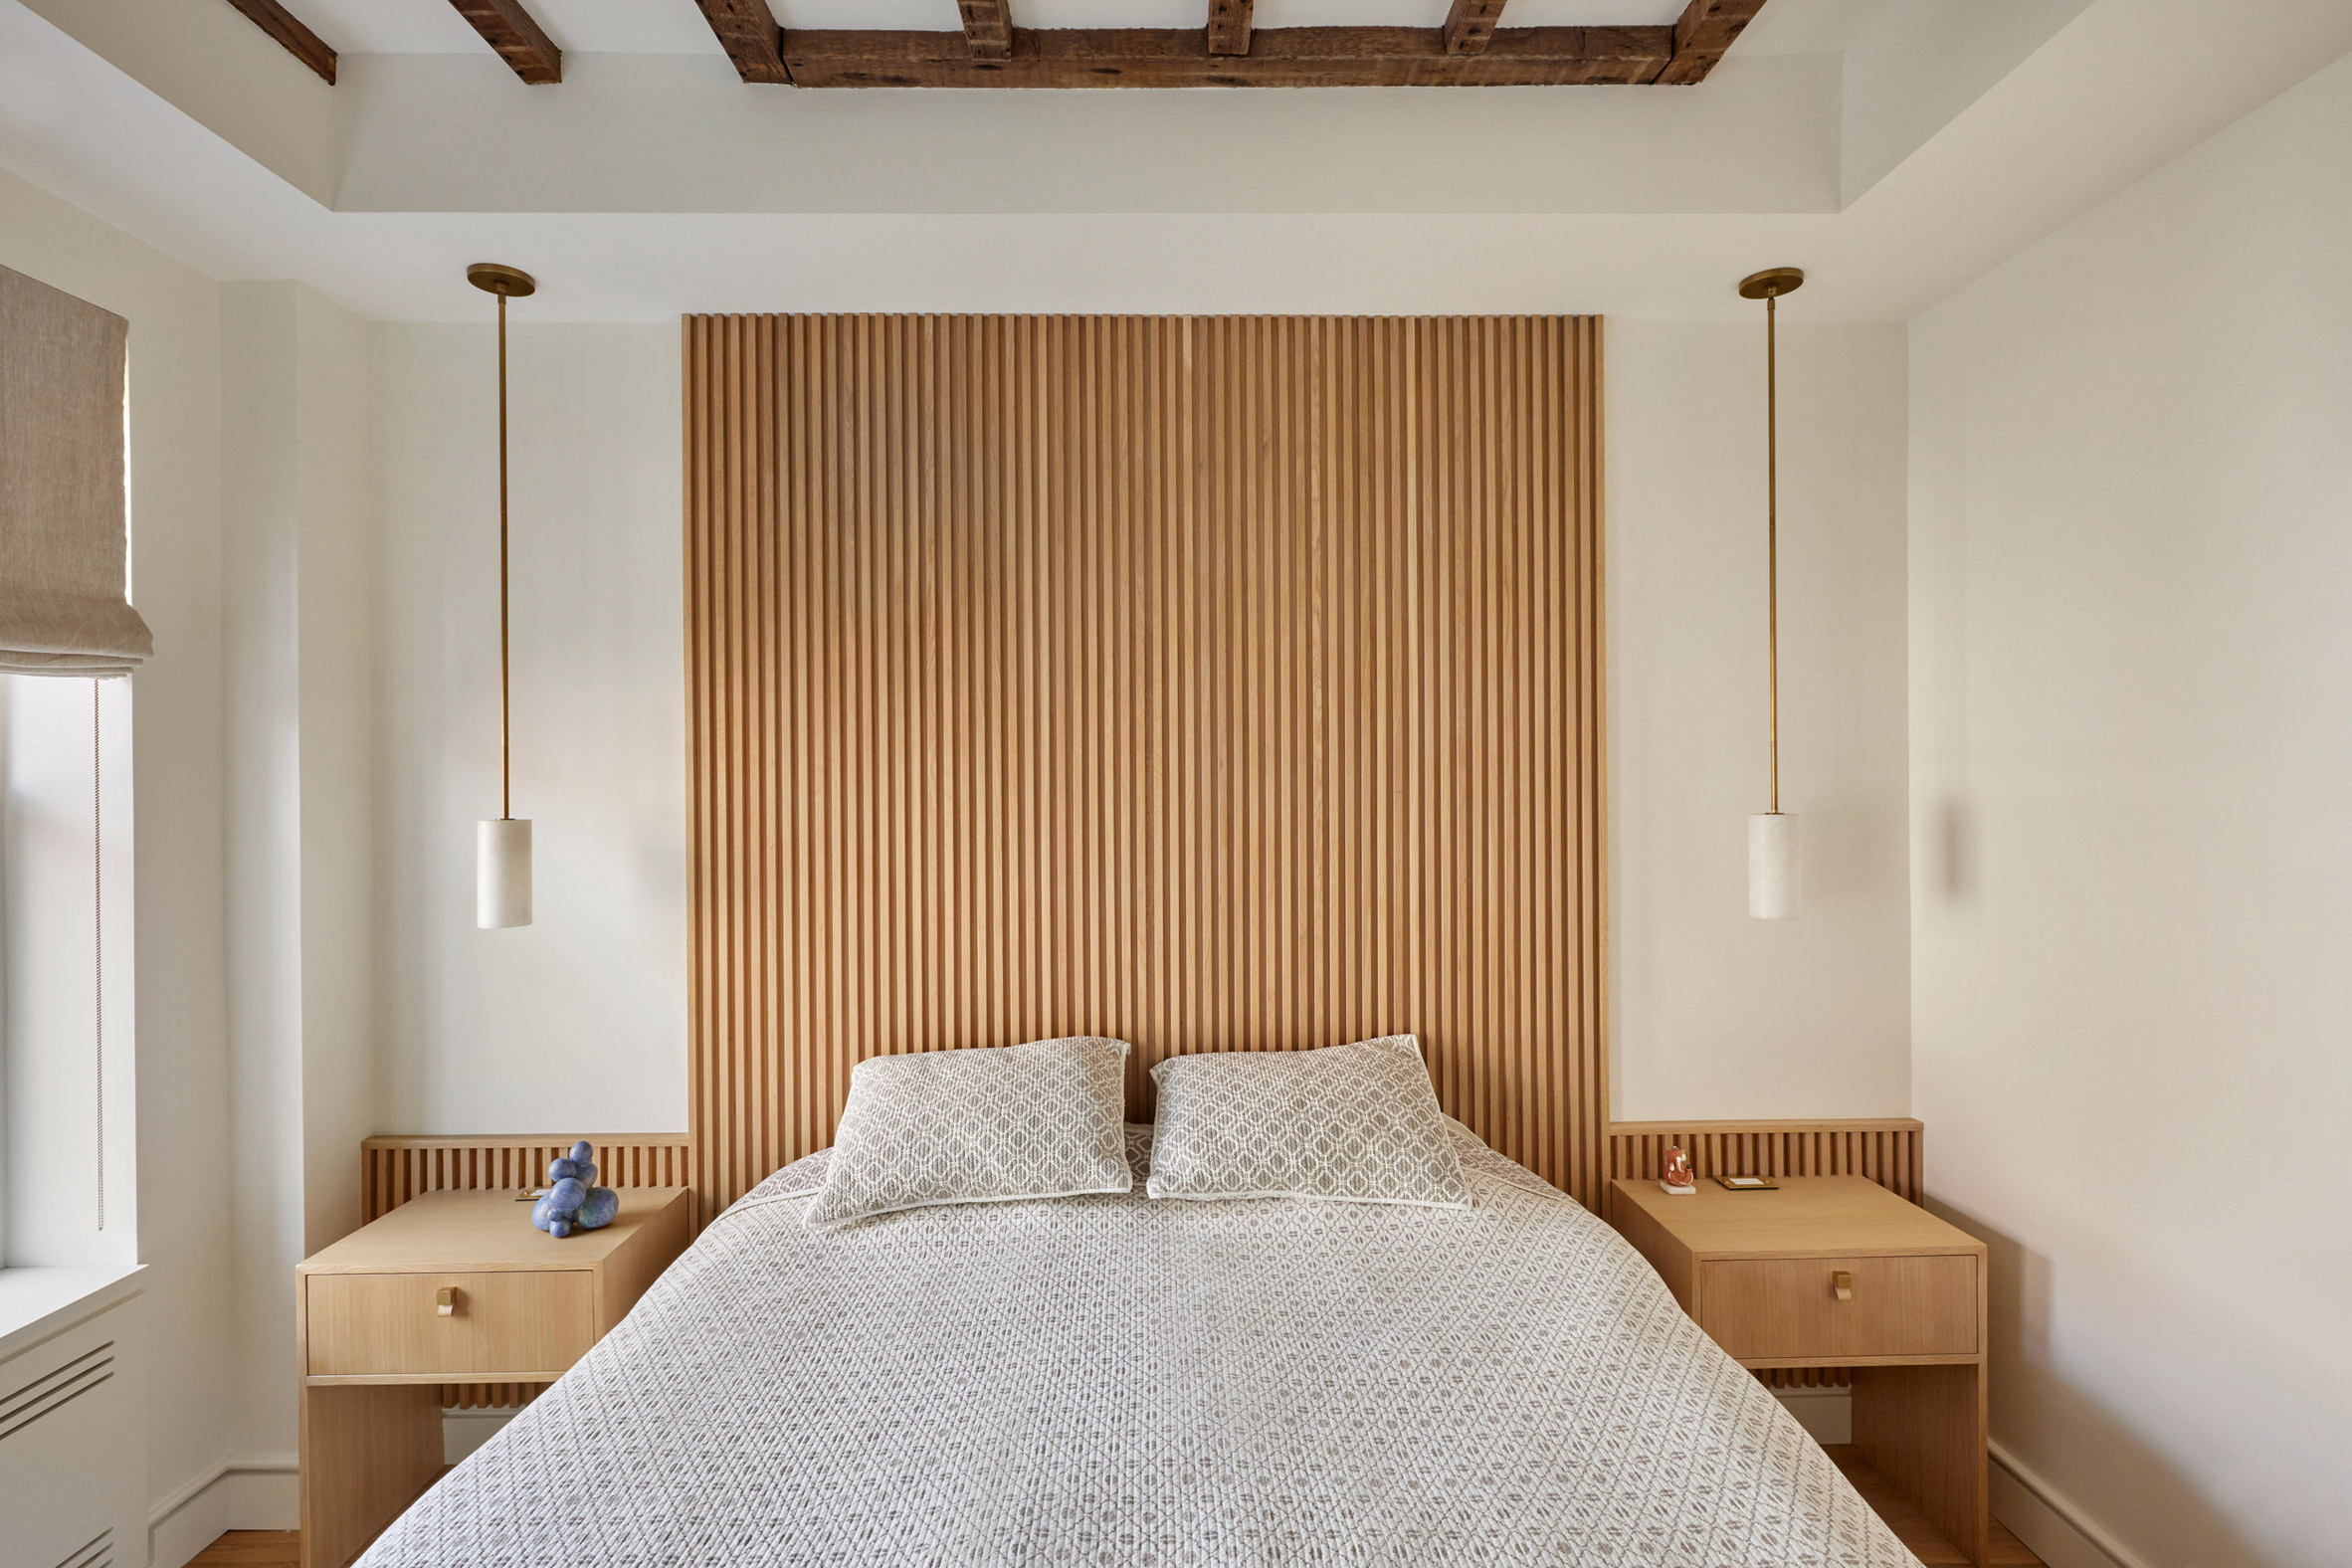 Bedroom with oak headboard